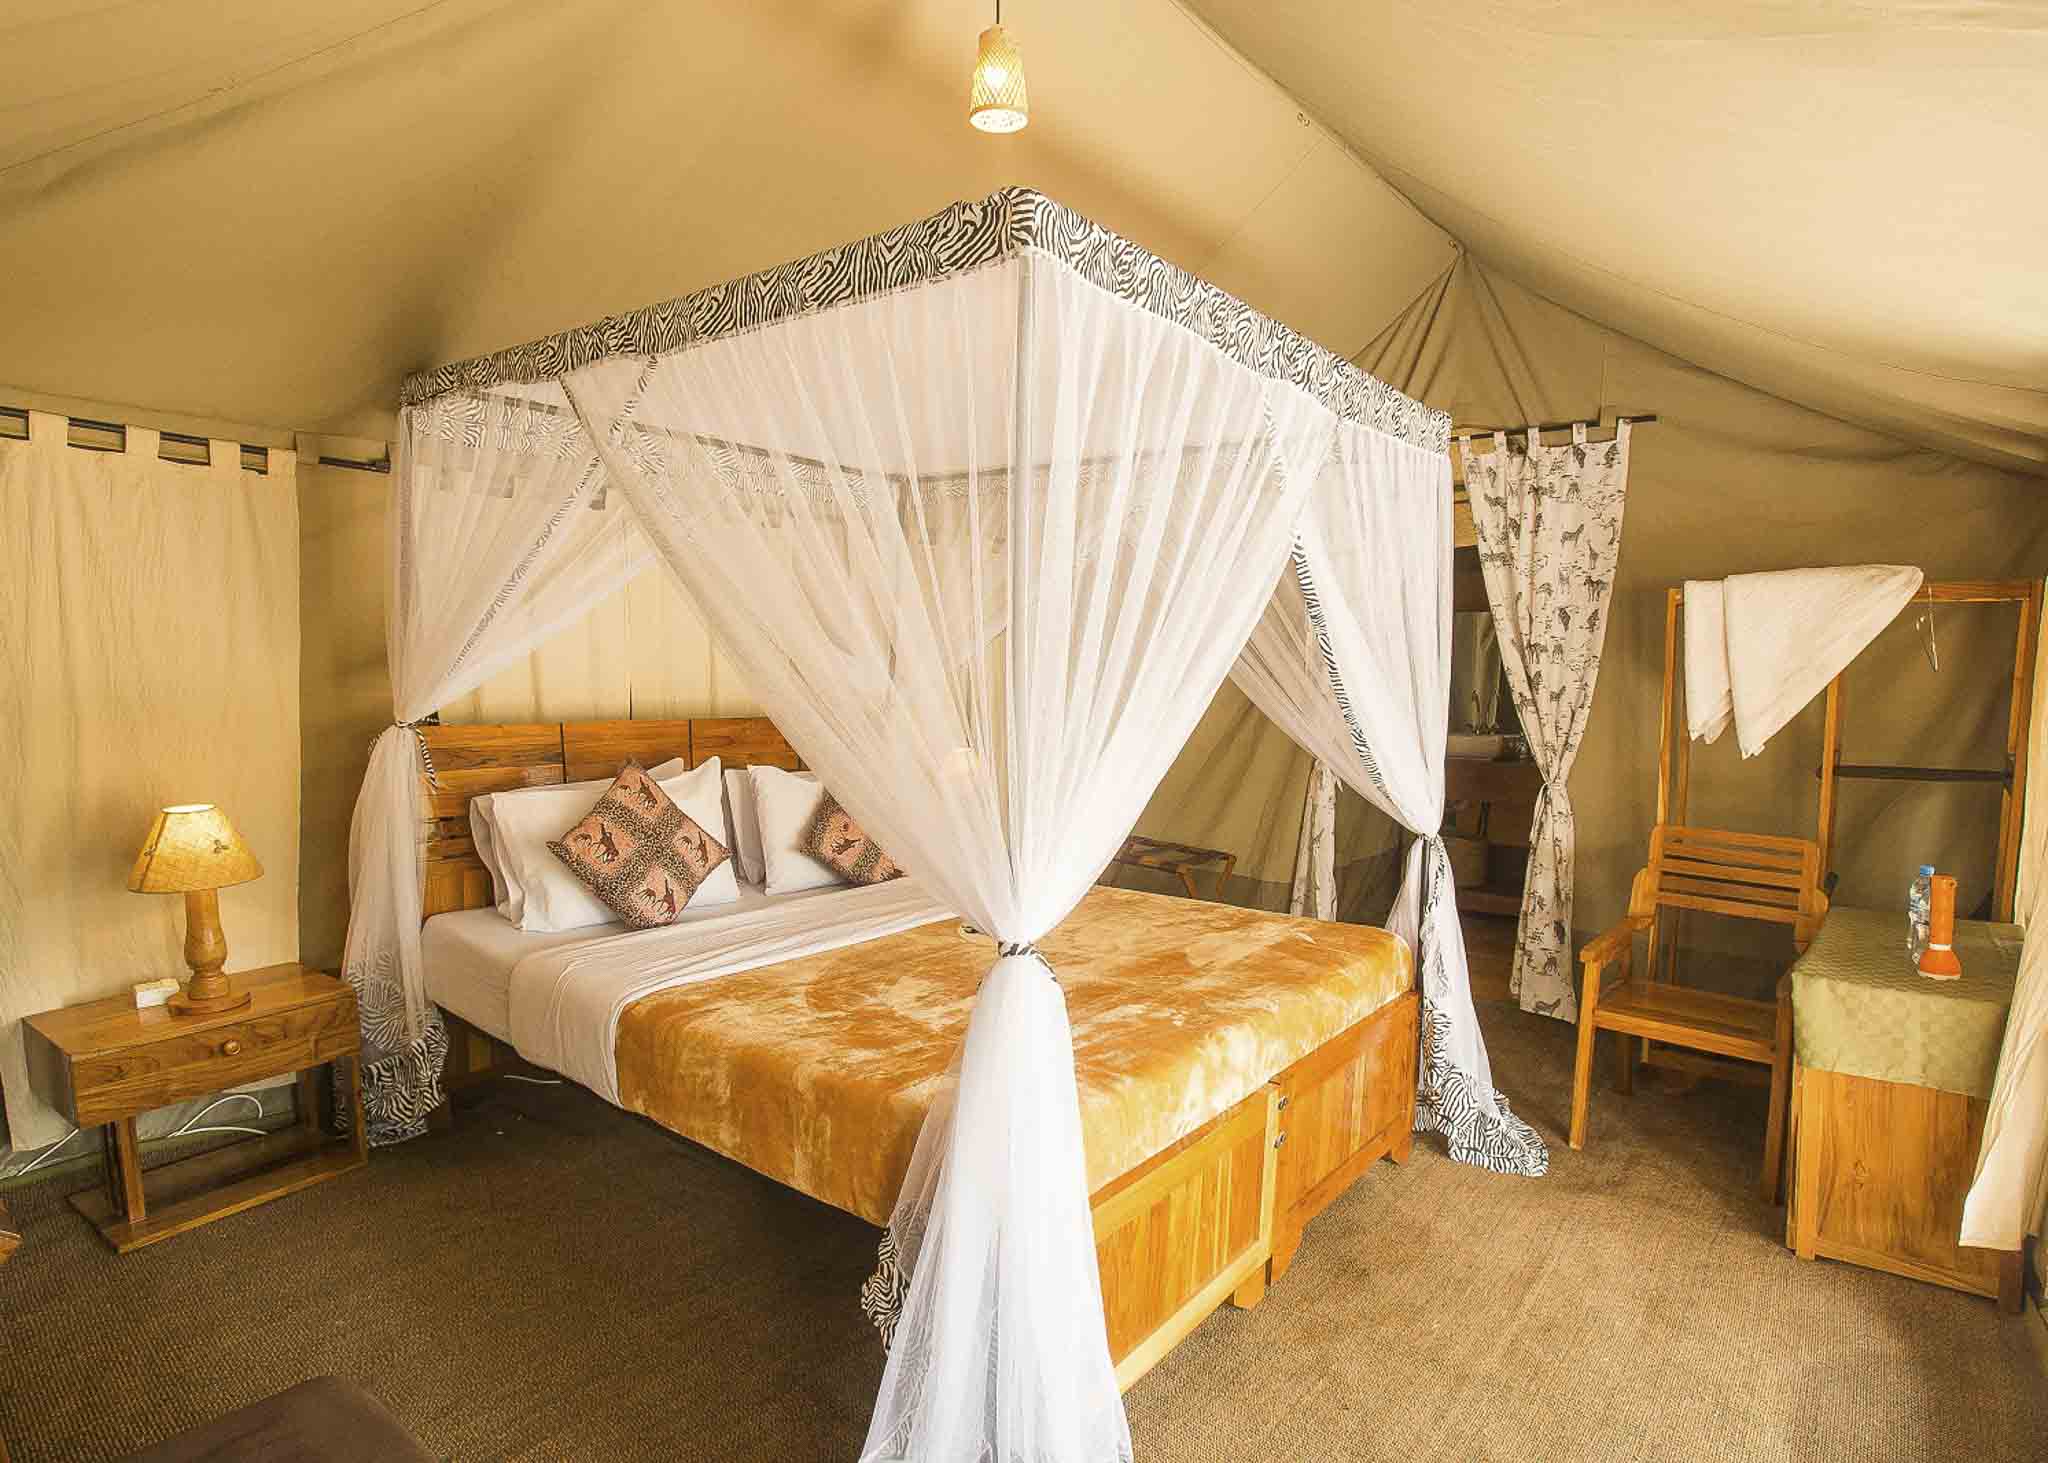 Tukaone Serengeti Camp